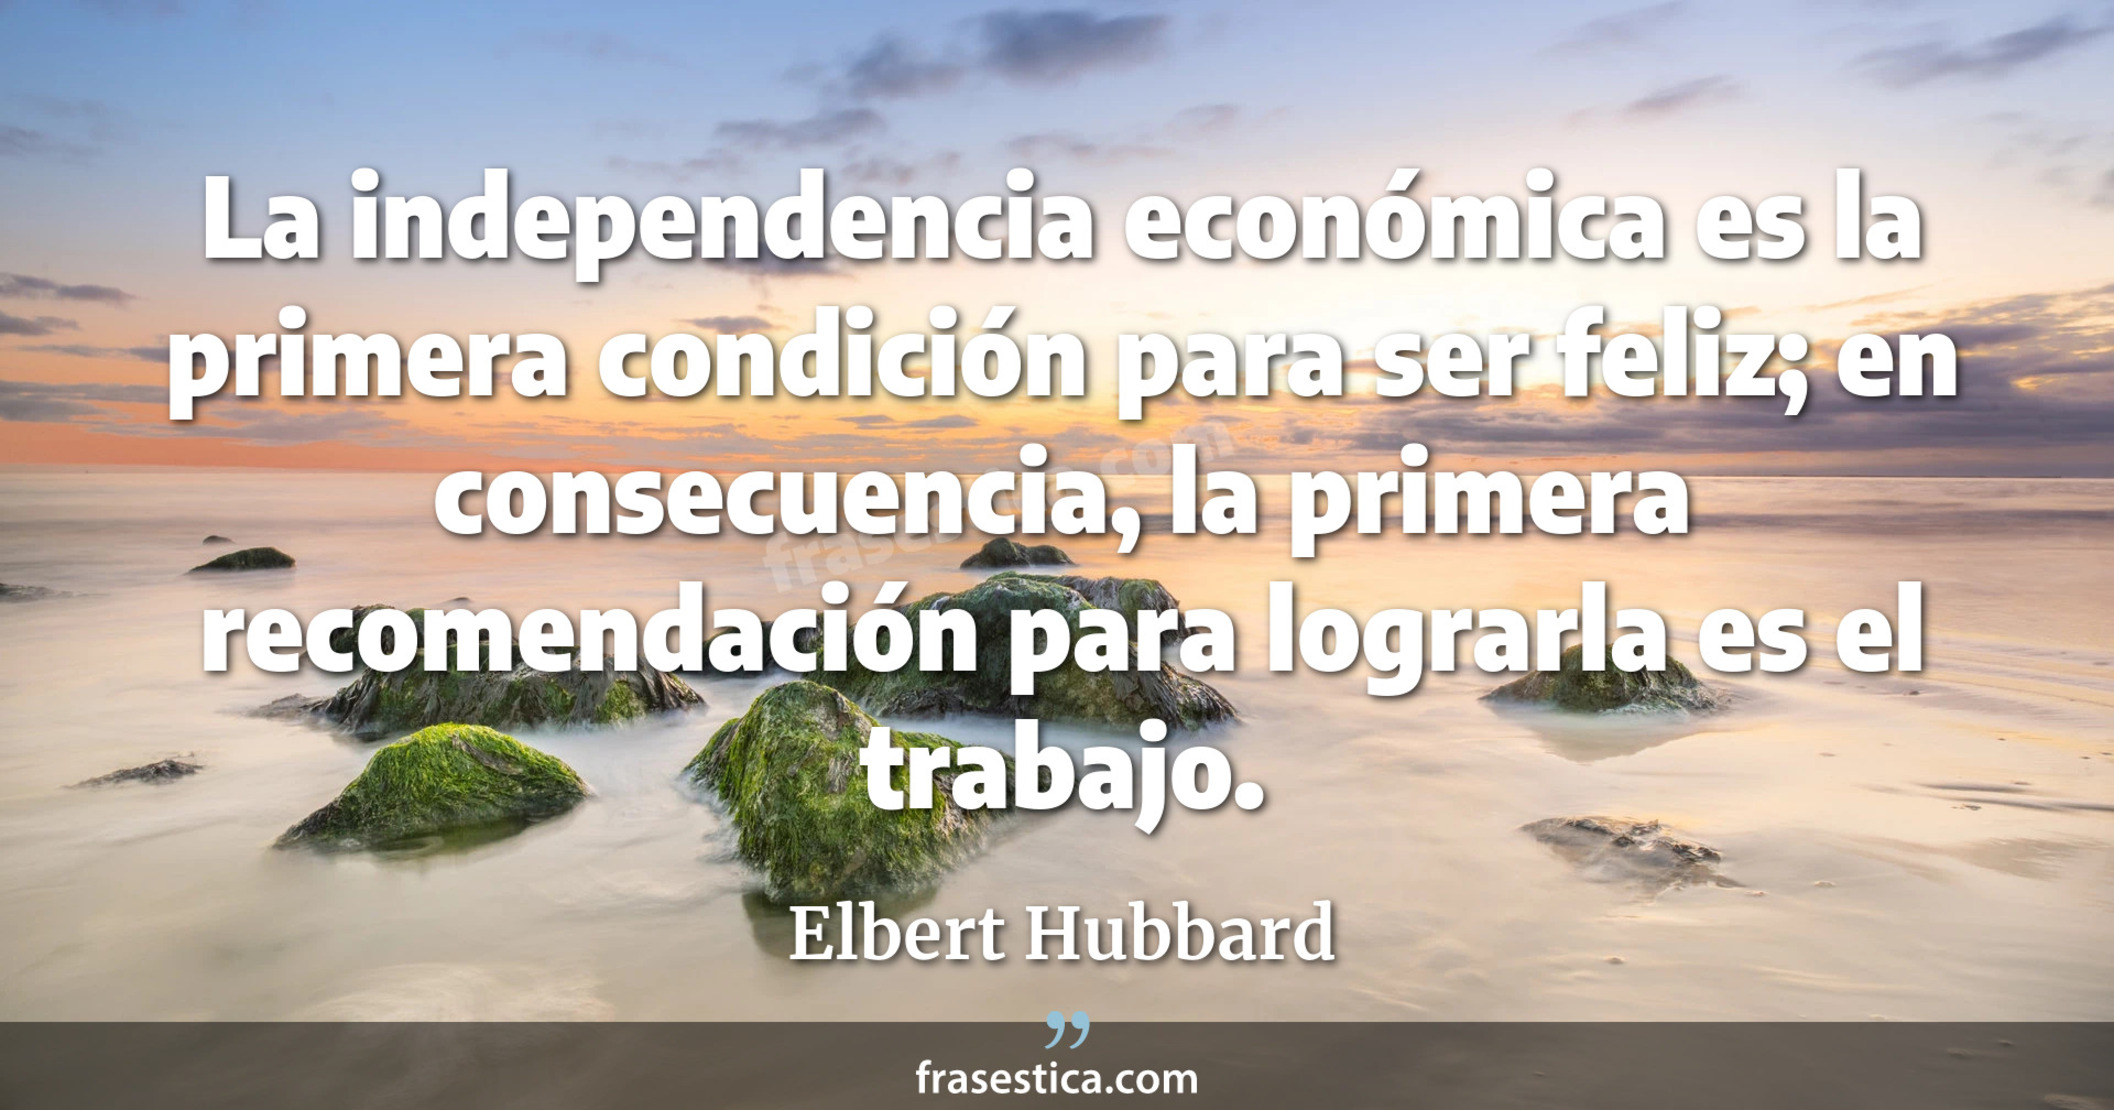 La independencia económica es la primera condición para ser feliz; en consecuencia, la primera recomendación para lograrla es el trabajo. - Elbert Hubbard